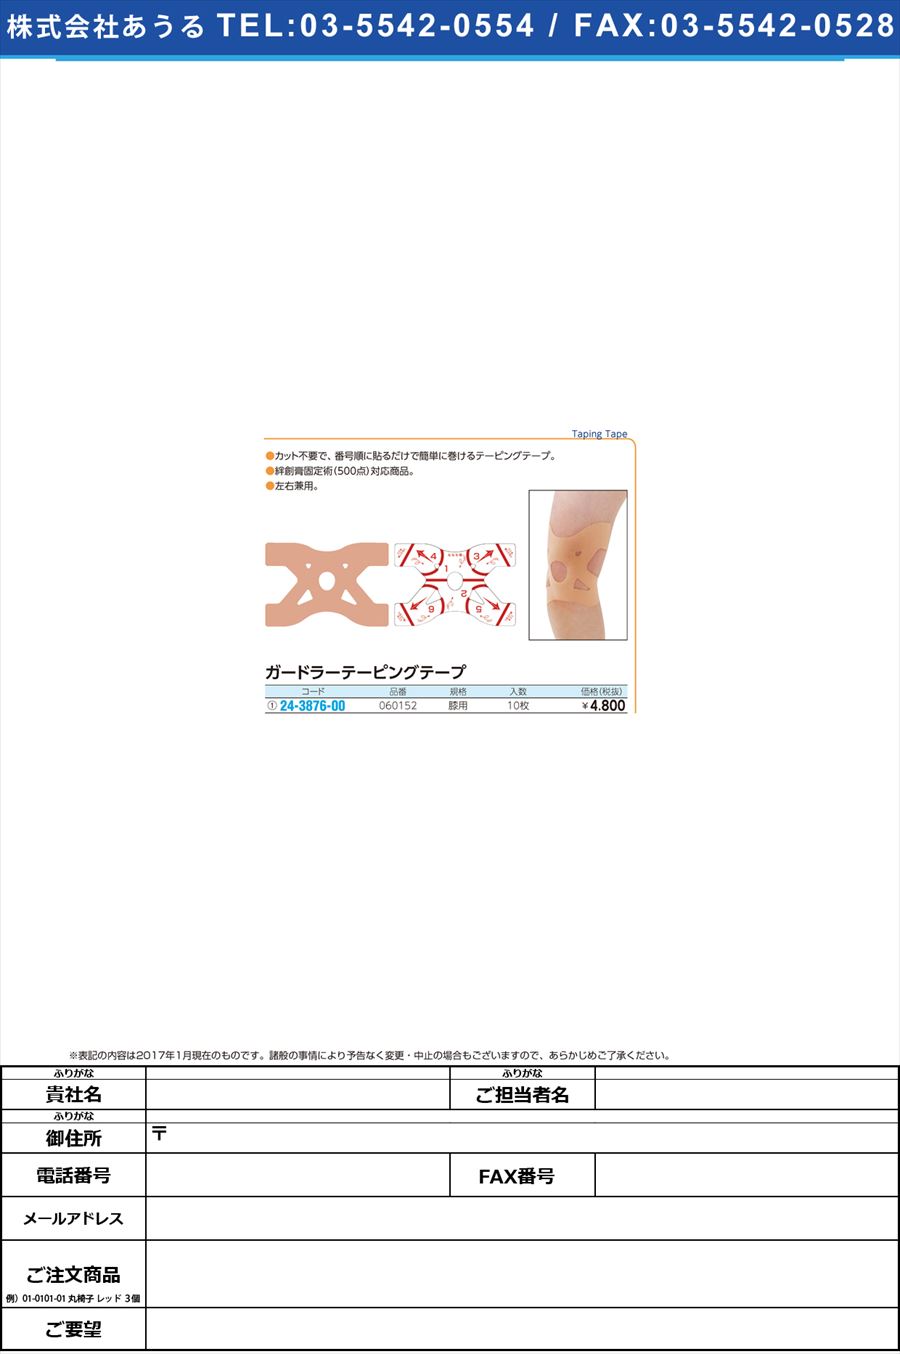 ガードラーテーピングテープ ｶﾞｰﾄﾞﾗｰﾃｰﾋﾟﾝｸﾞﾃｰﾌﾟ 060152(10ﾏｲ)(24-3876-00)